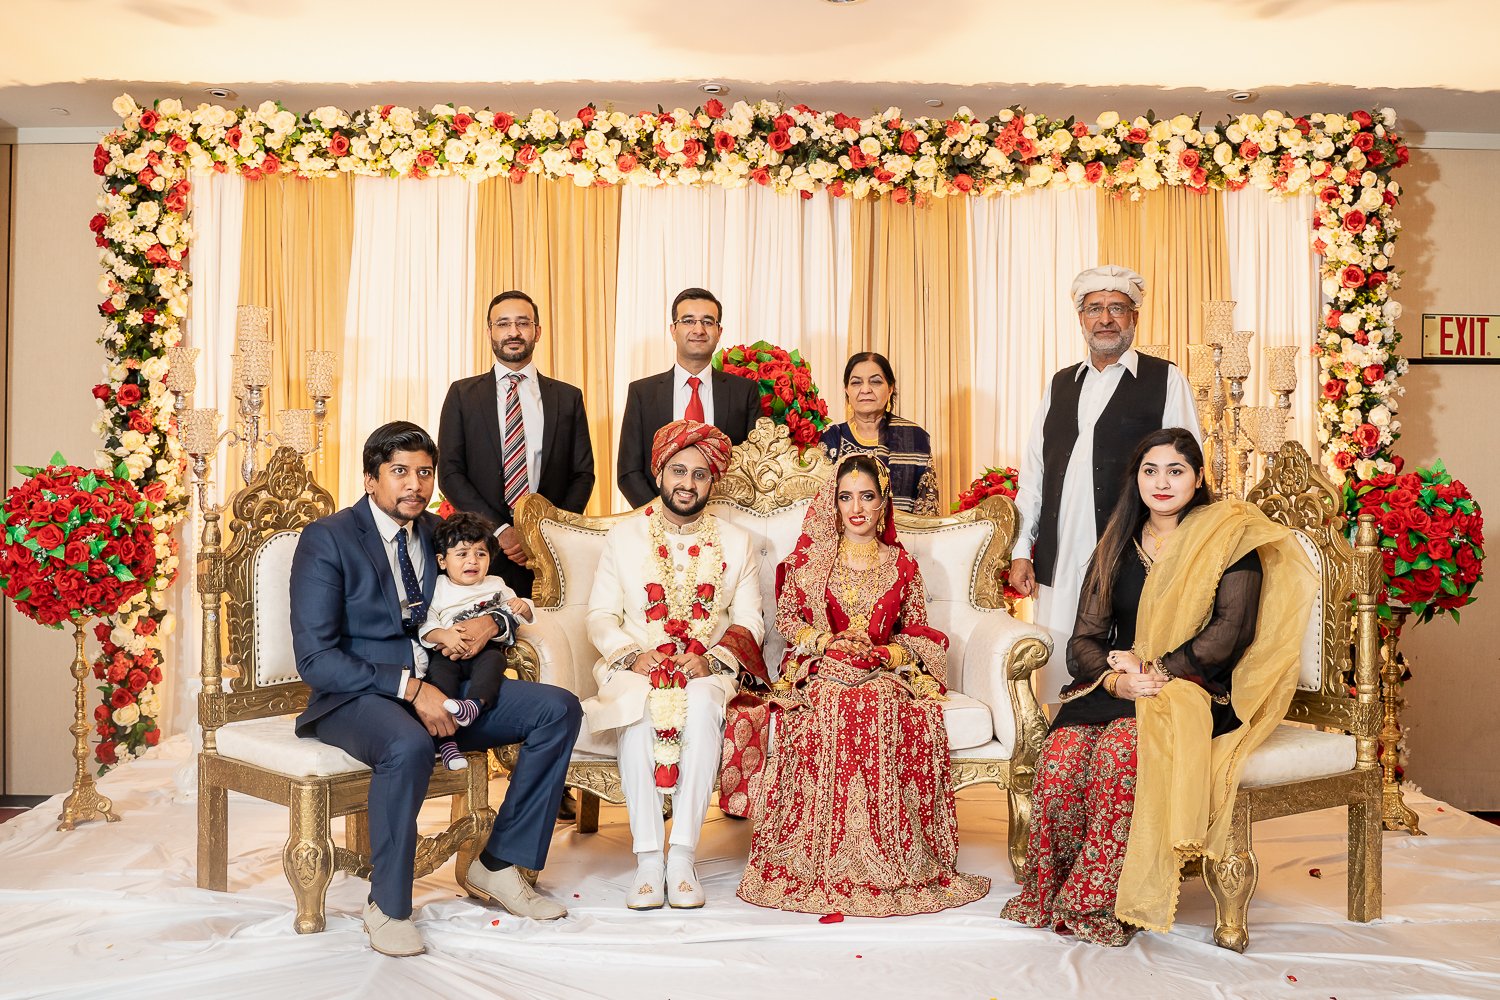 Pakistani-Edison-NJ-wedding-Mirchi-72.jpg